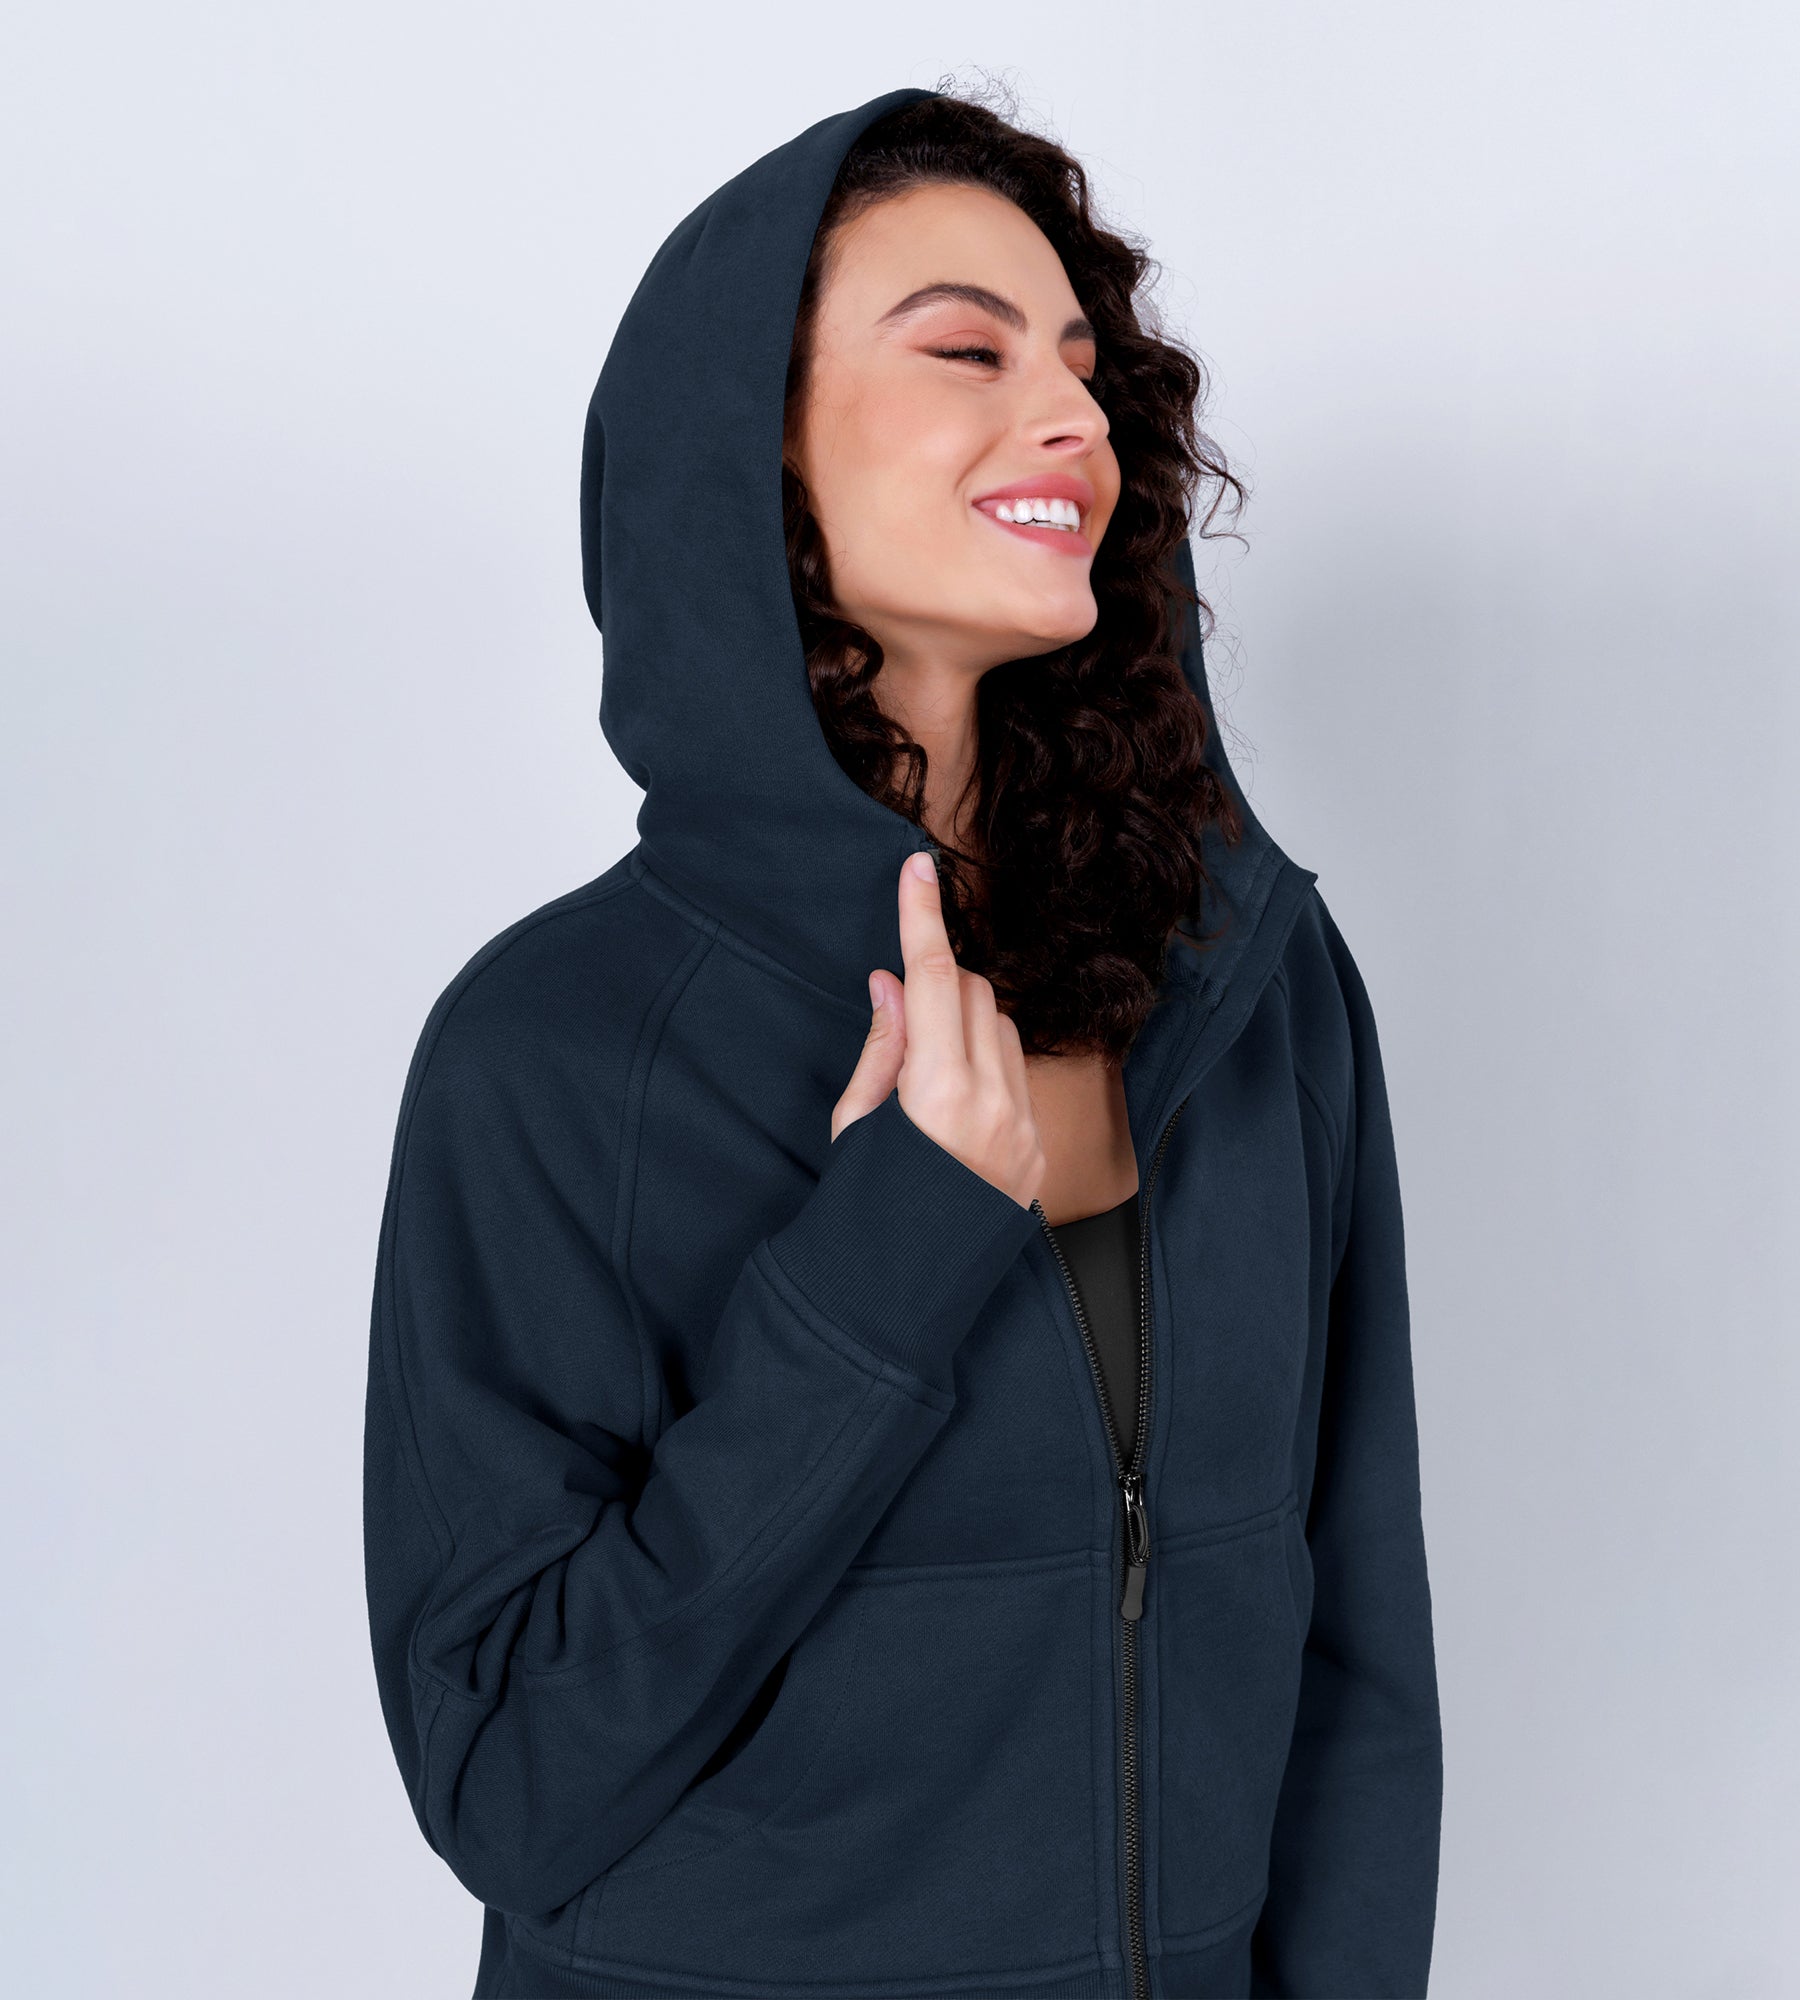 Women's Full Zipper Fleece Lined Cropped Hoodie - ododos